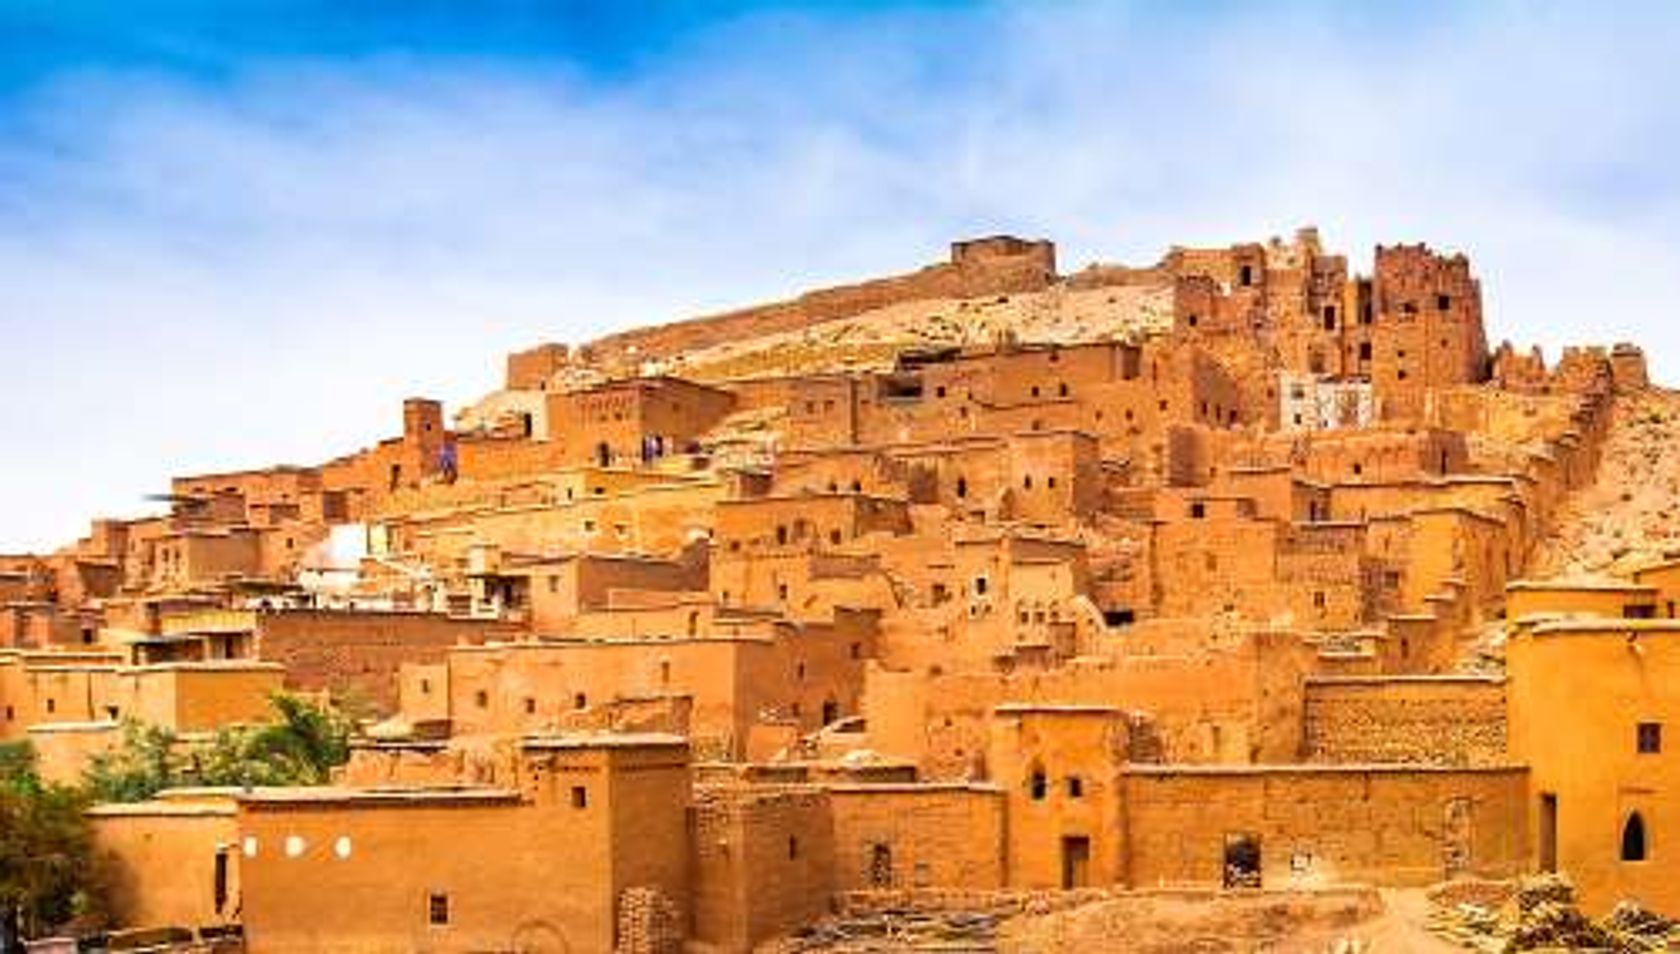 Marokko Kasbah Ait Ben Haddou near Ouarzazate